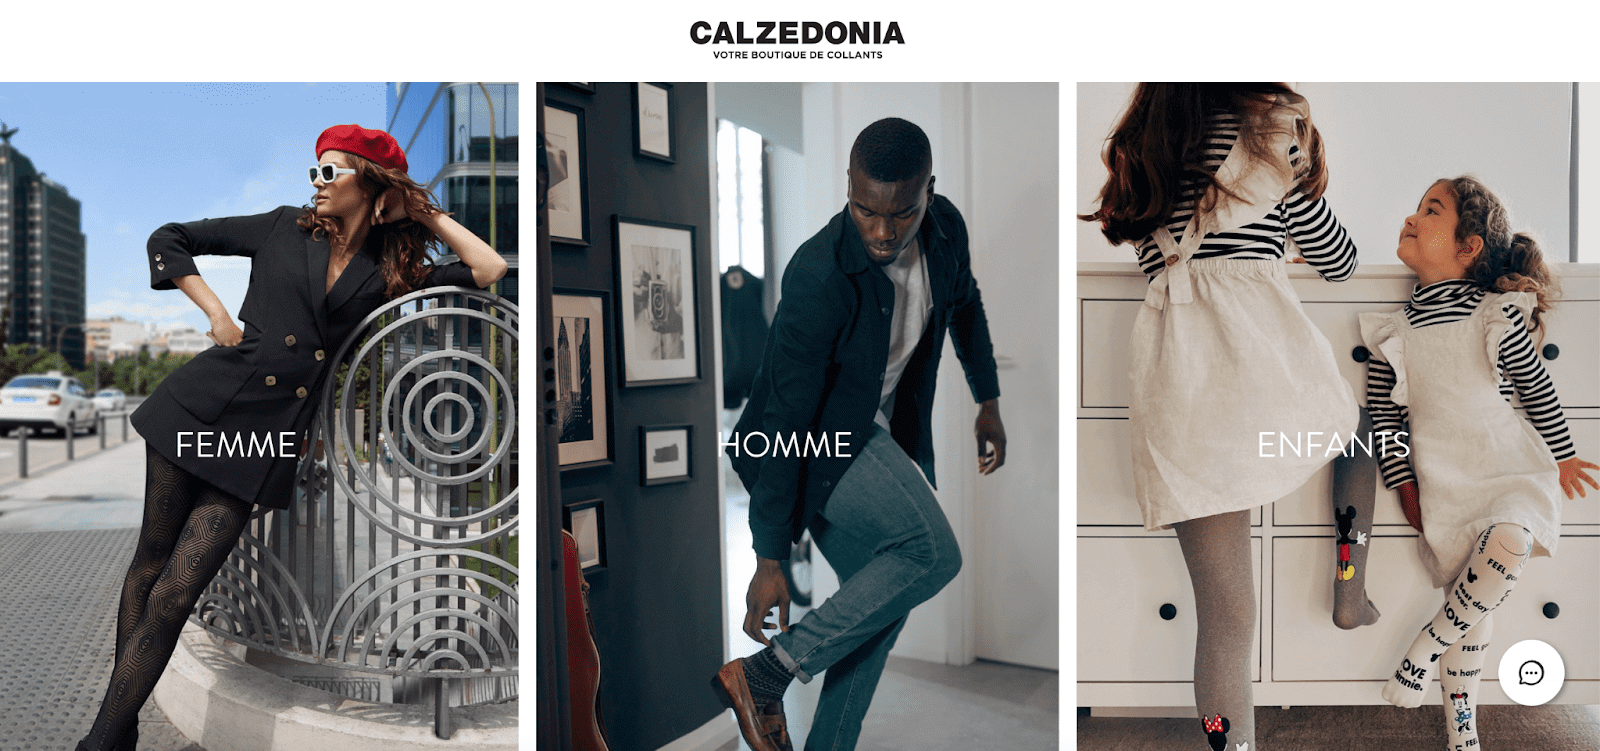 Fidélisation client marketing : la home page Calzedonia